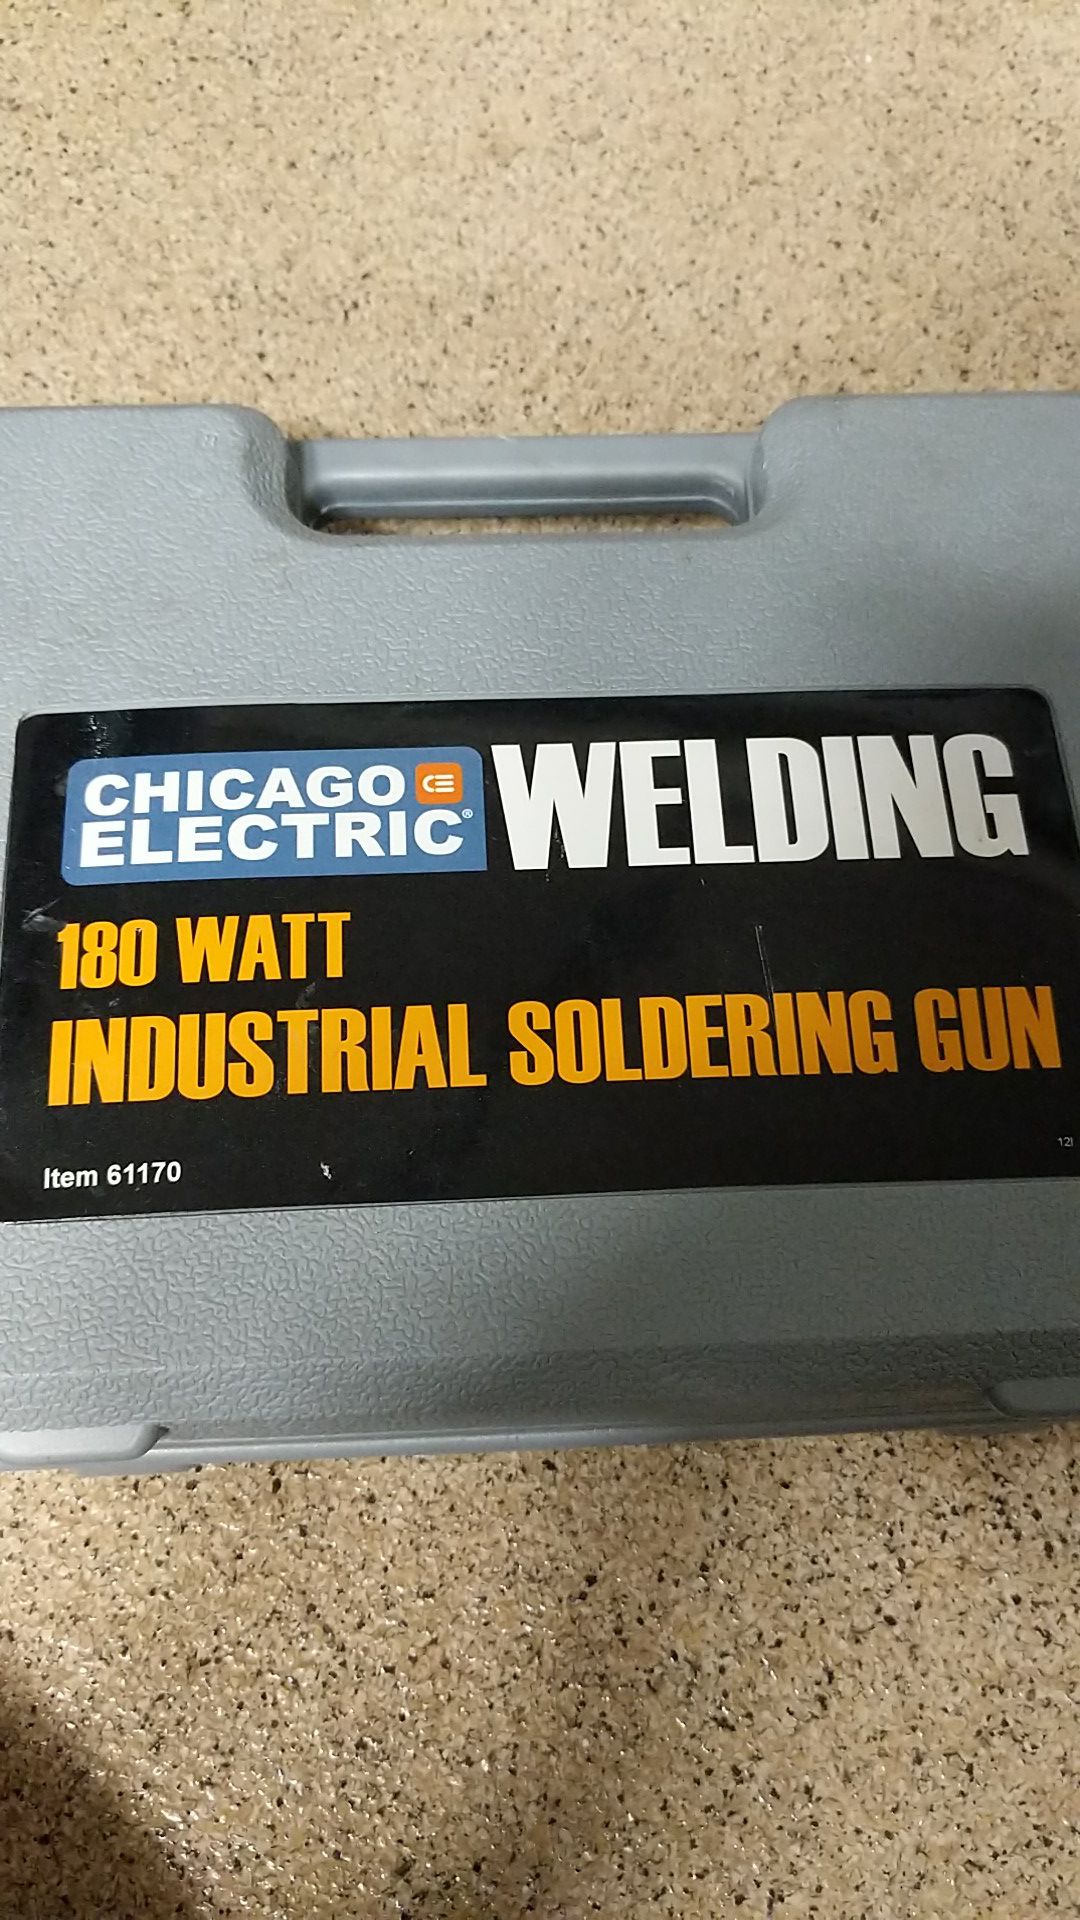 Industrial soldering gun